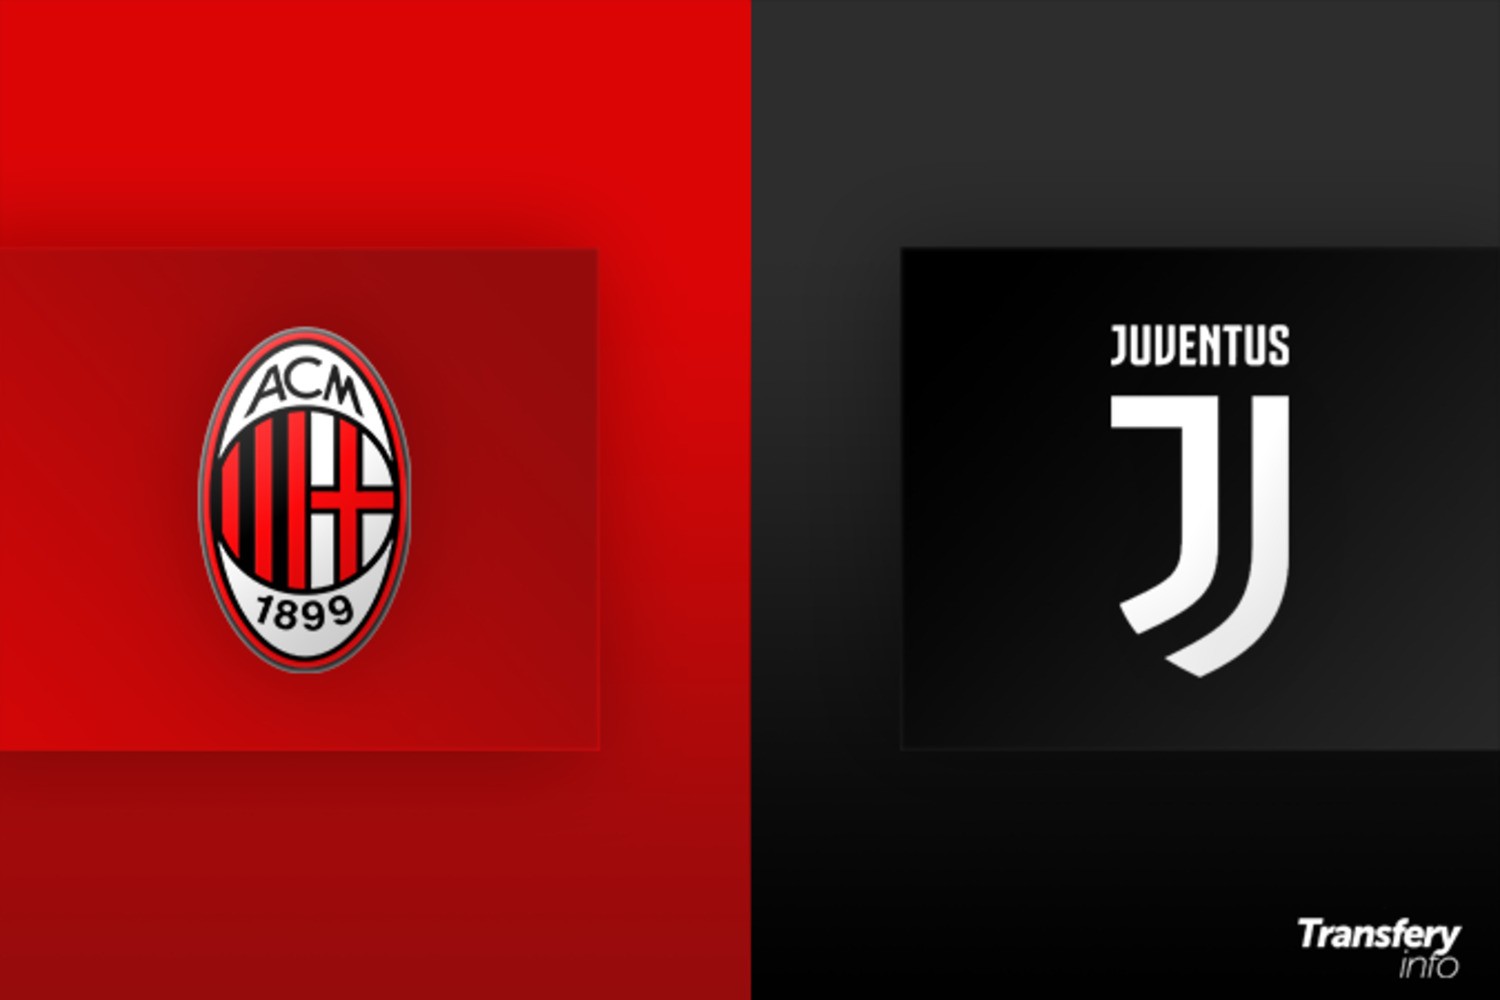 AC Milan prowadzi rozmowy w sprawie transferu piłkarza Juventusu